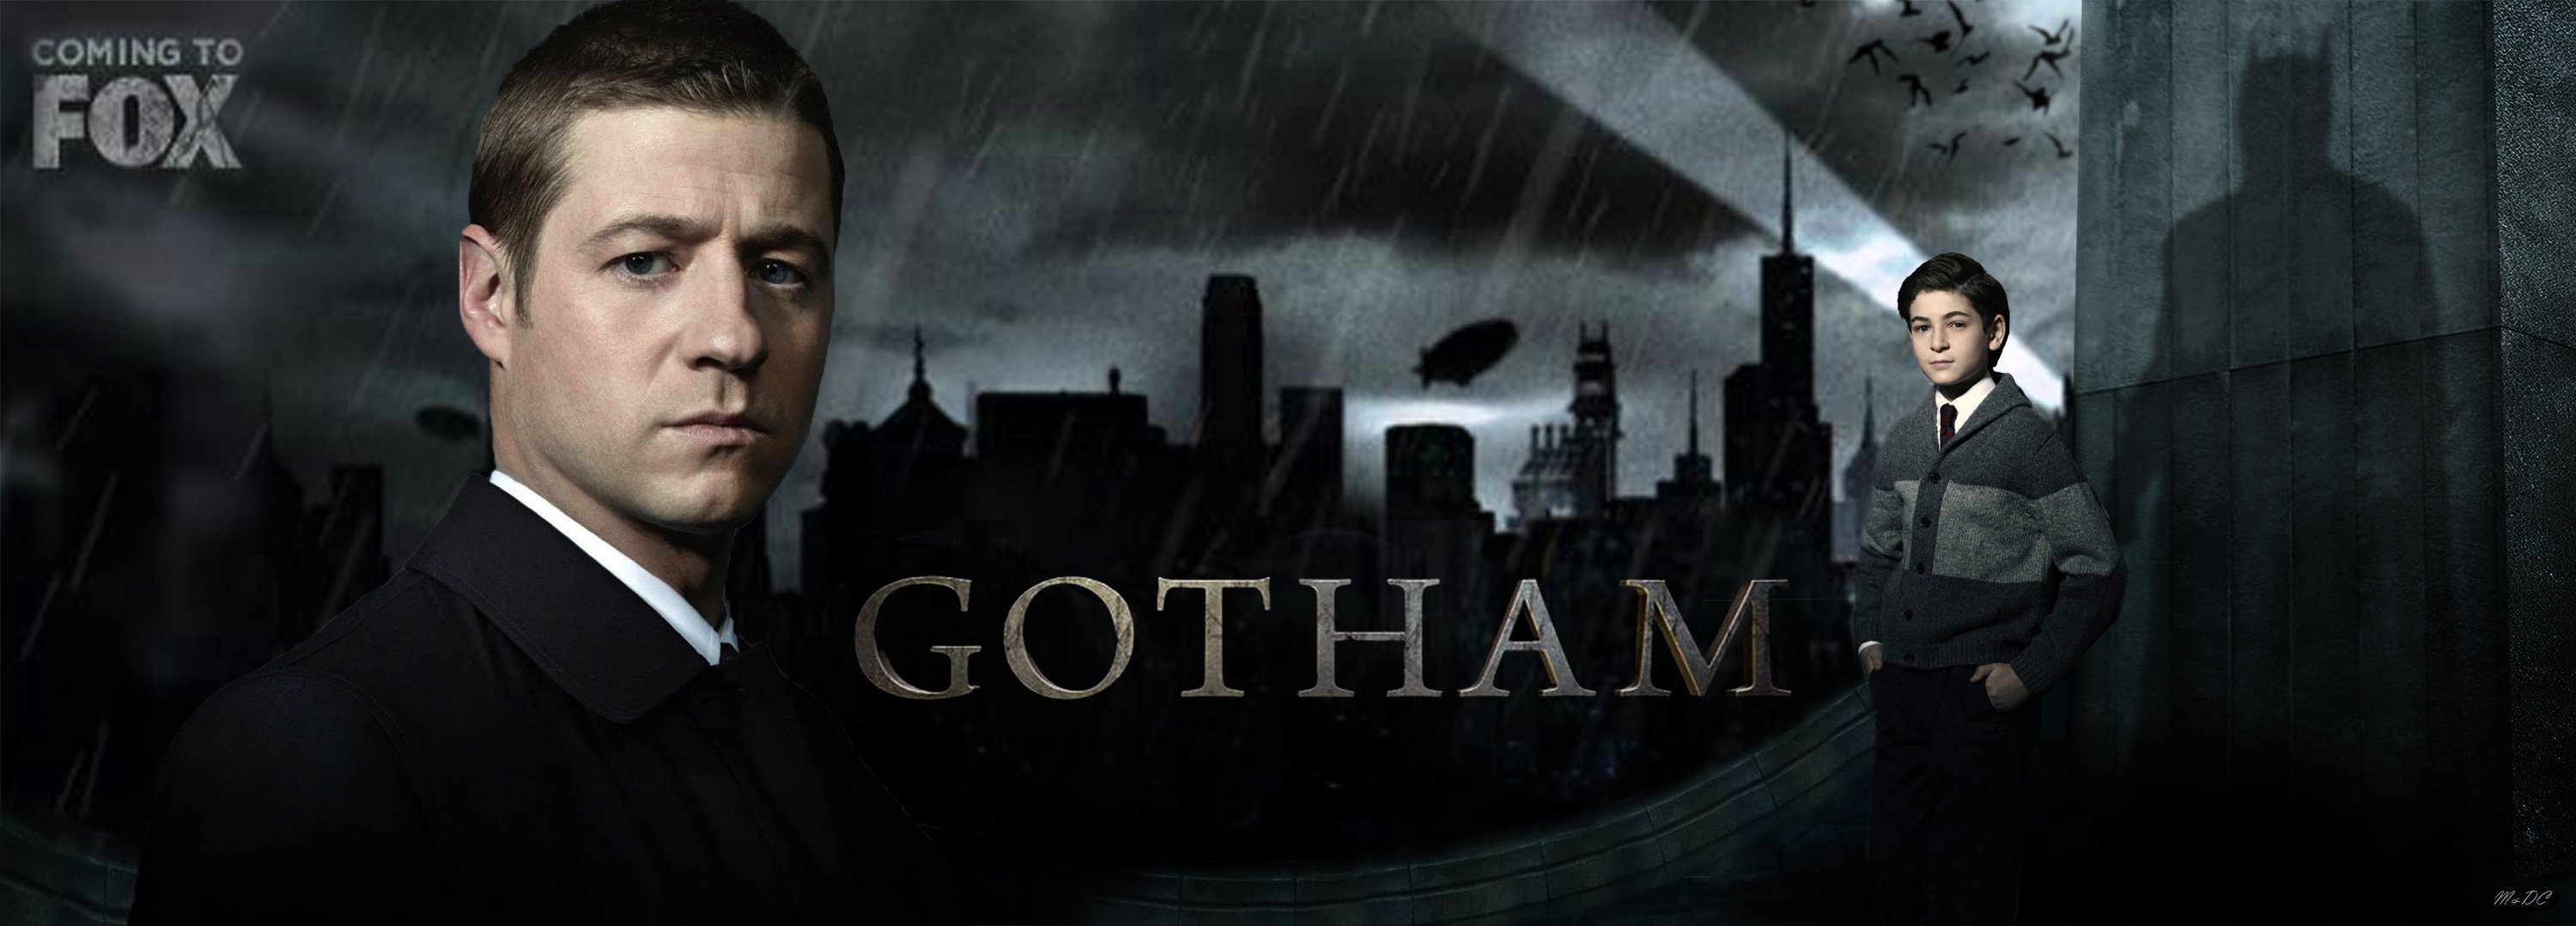 GOTHAM series batman action superhero dc comics d c wallpaper